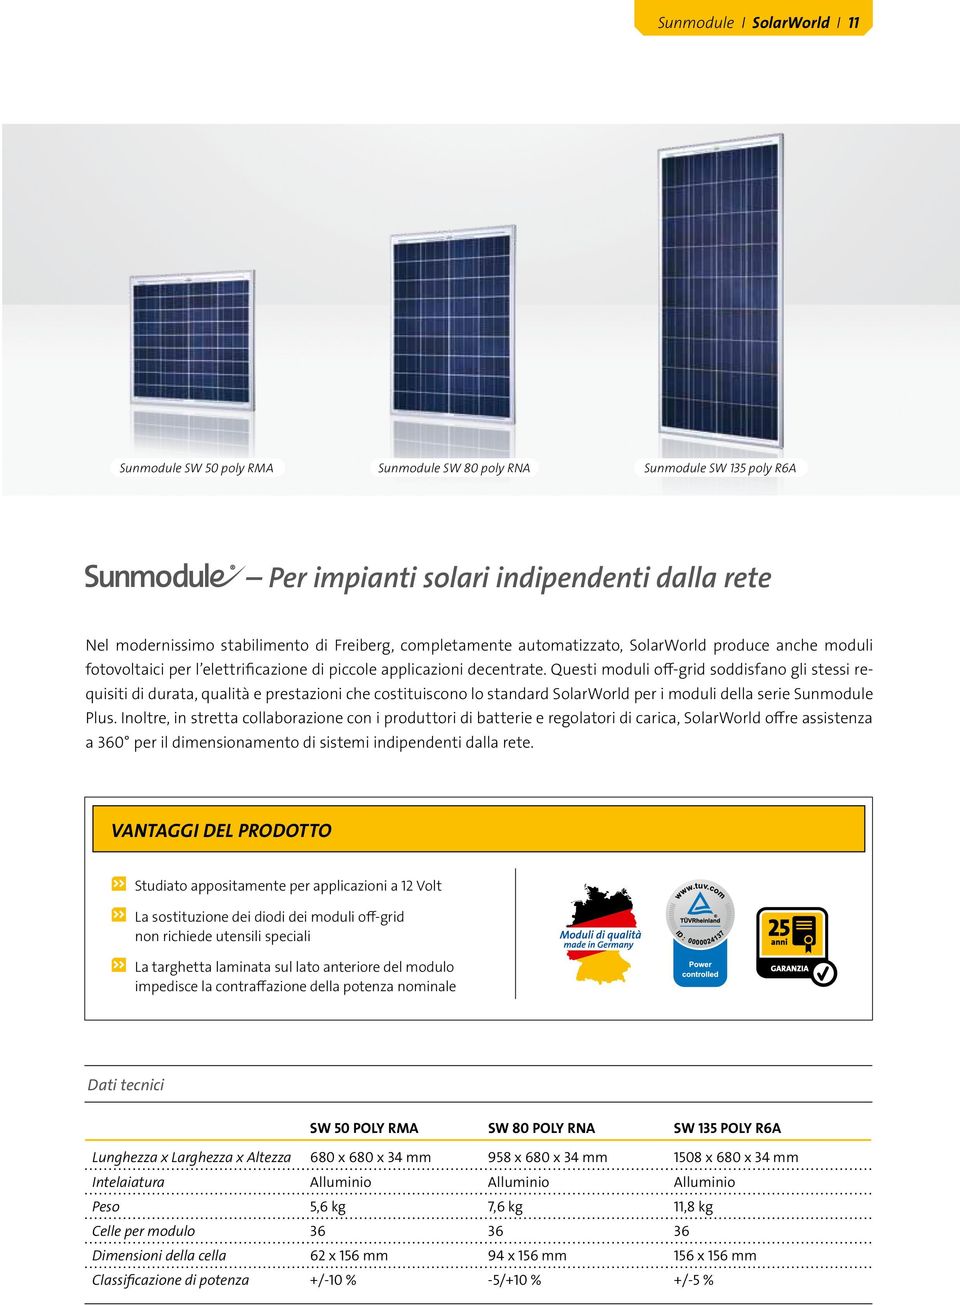 Questi moduli off-grid soddisfano gli stessi requisiti di durata, qualità e prestazioni che costituiscono lo standard SolarWorld per i moduli della serie Sunmodule Plus.